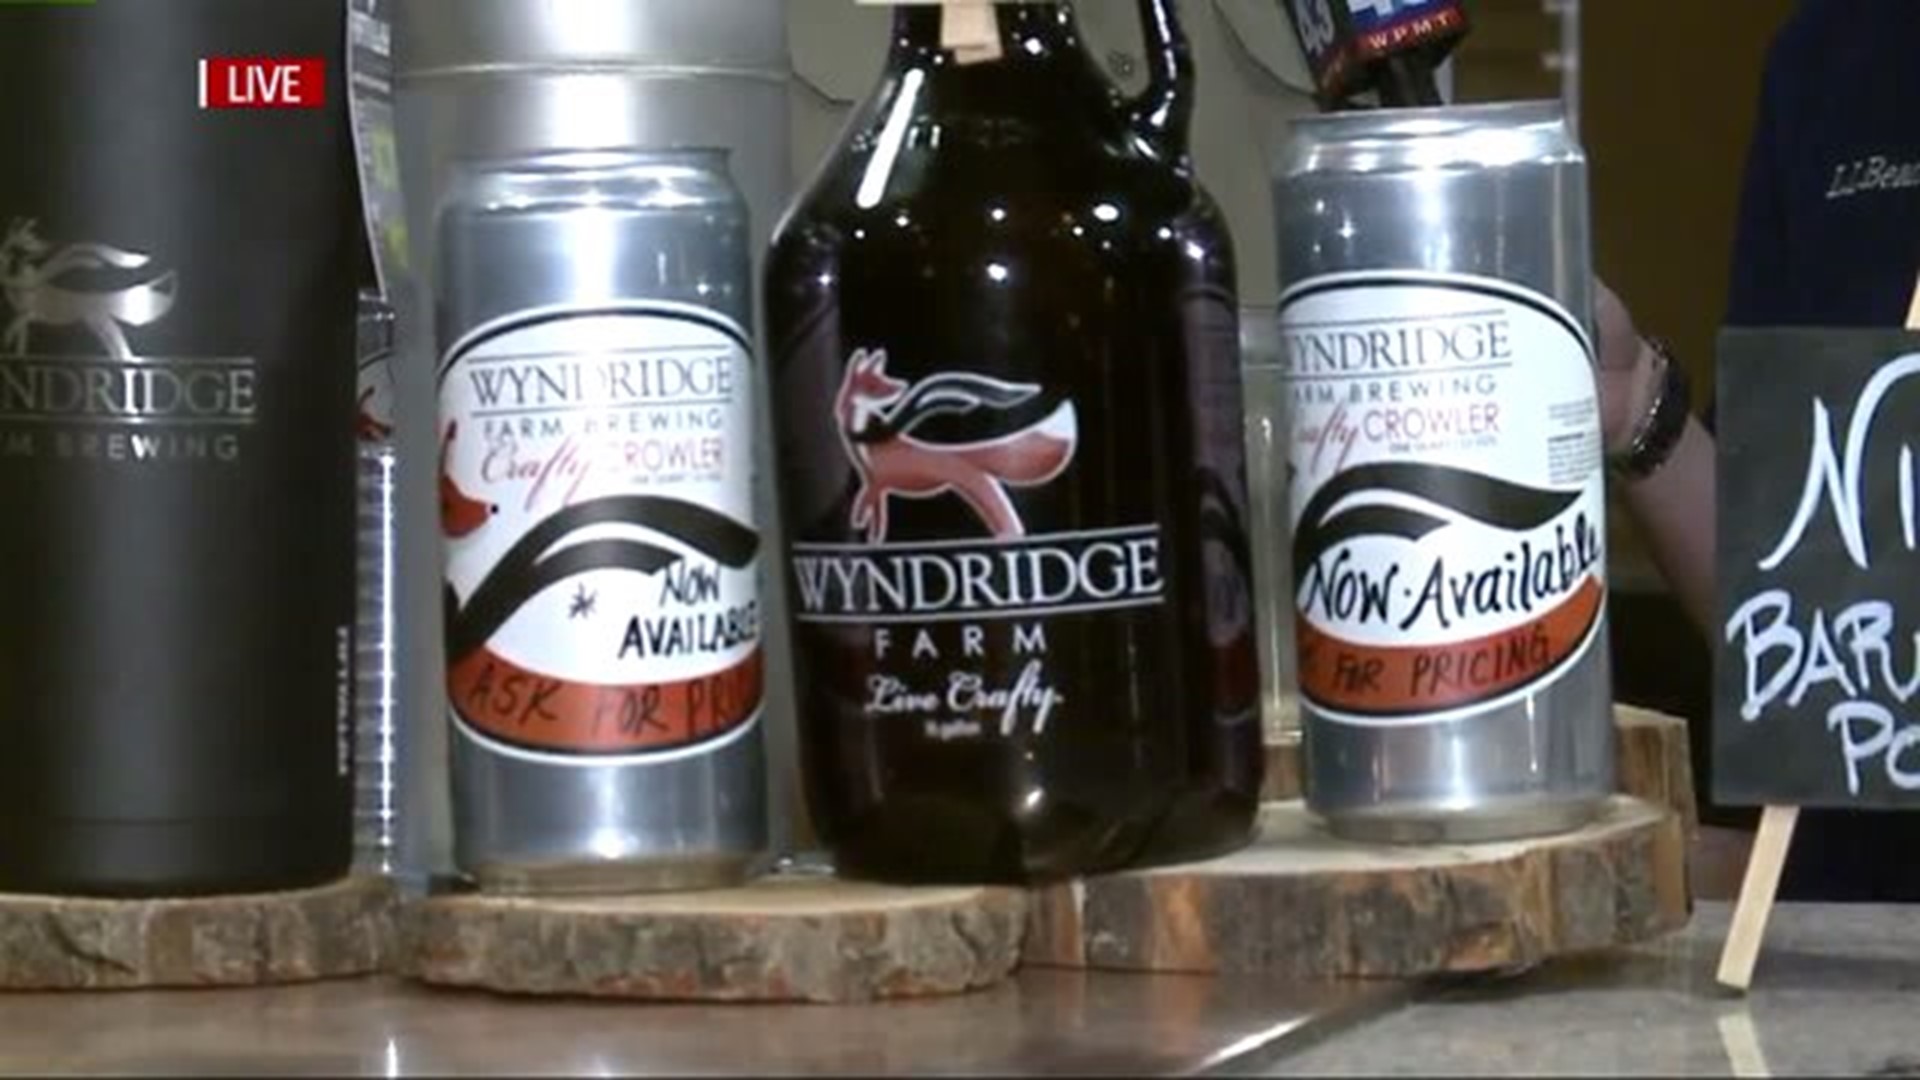 Wyndridge Farms craft beers